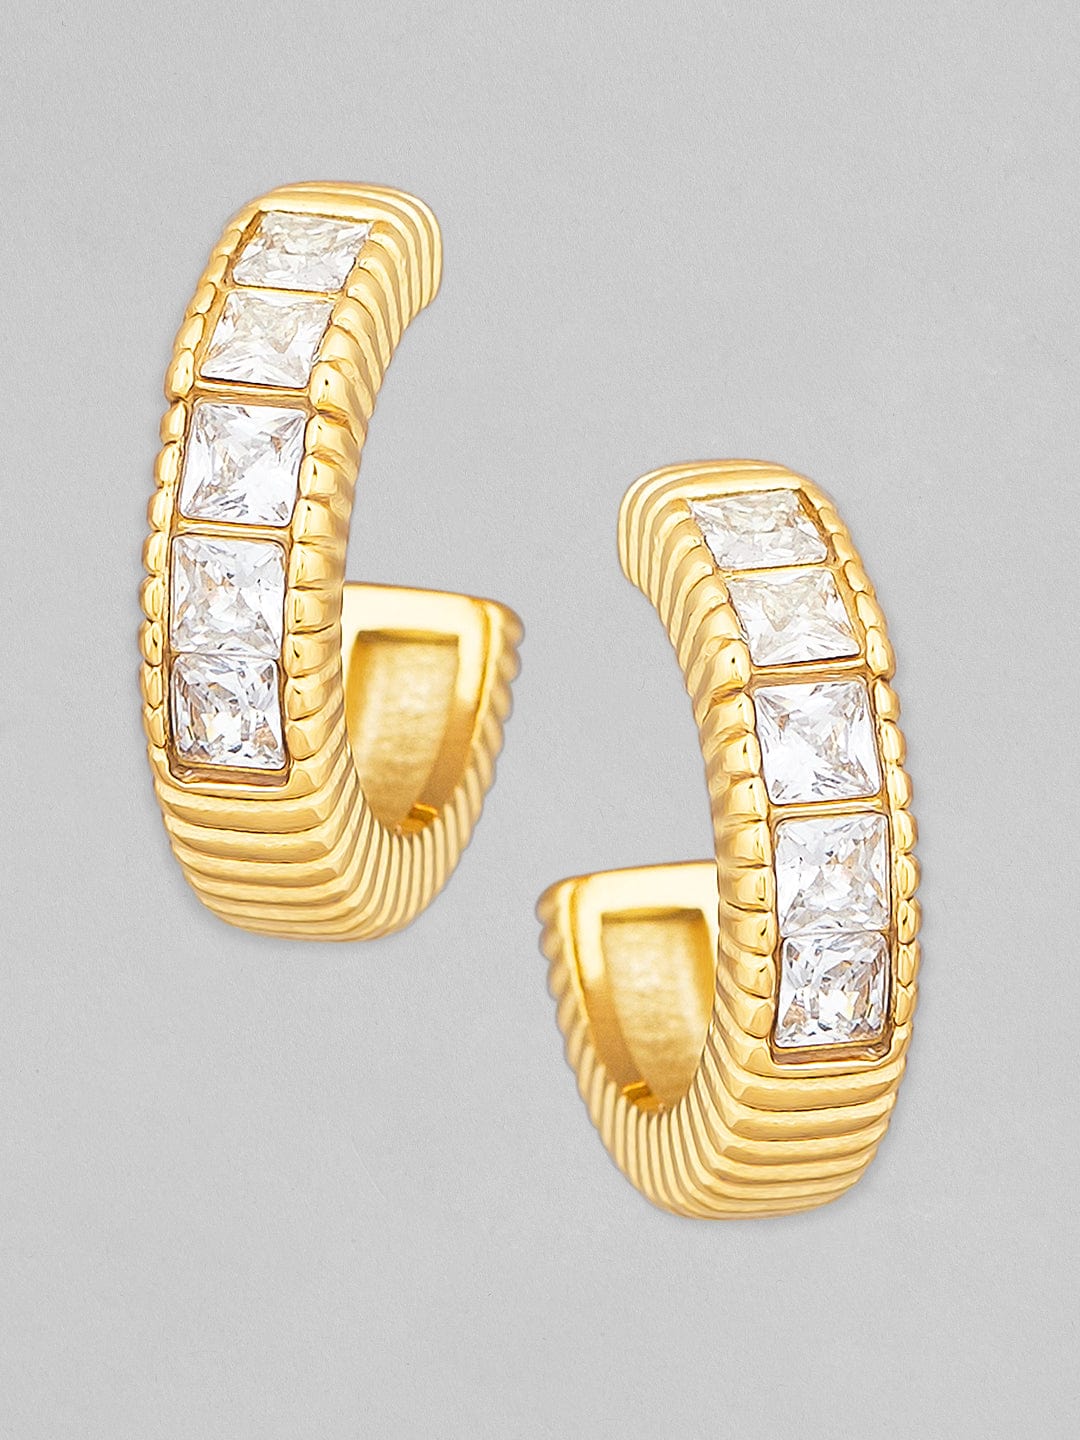 Rubans Voguish 18K Gold Plated Stainless Steel Waterproof Huggie Hoop Earring With Zircons. Earrings